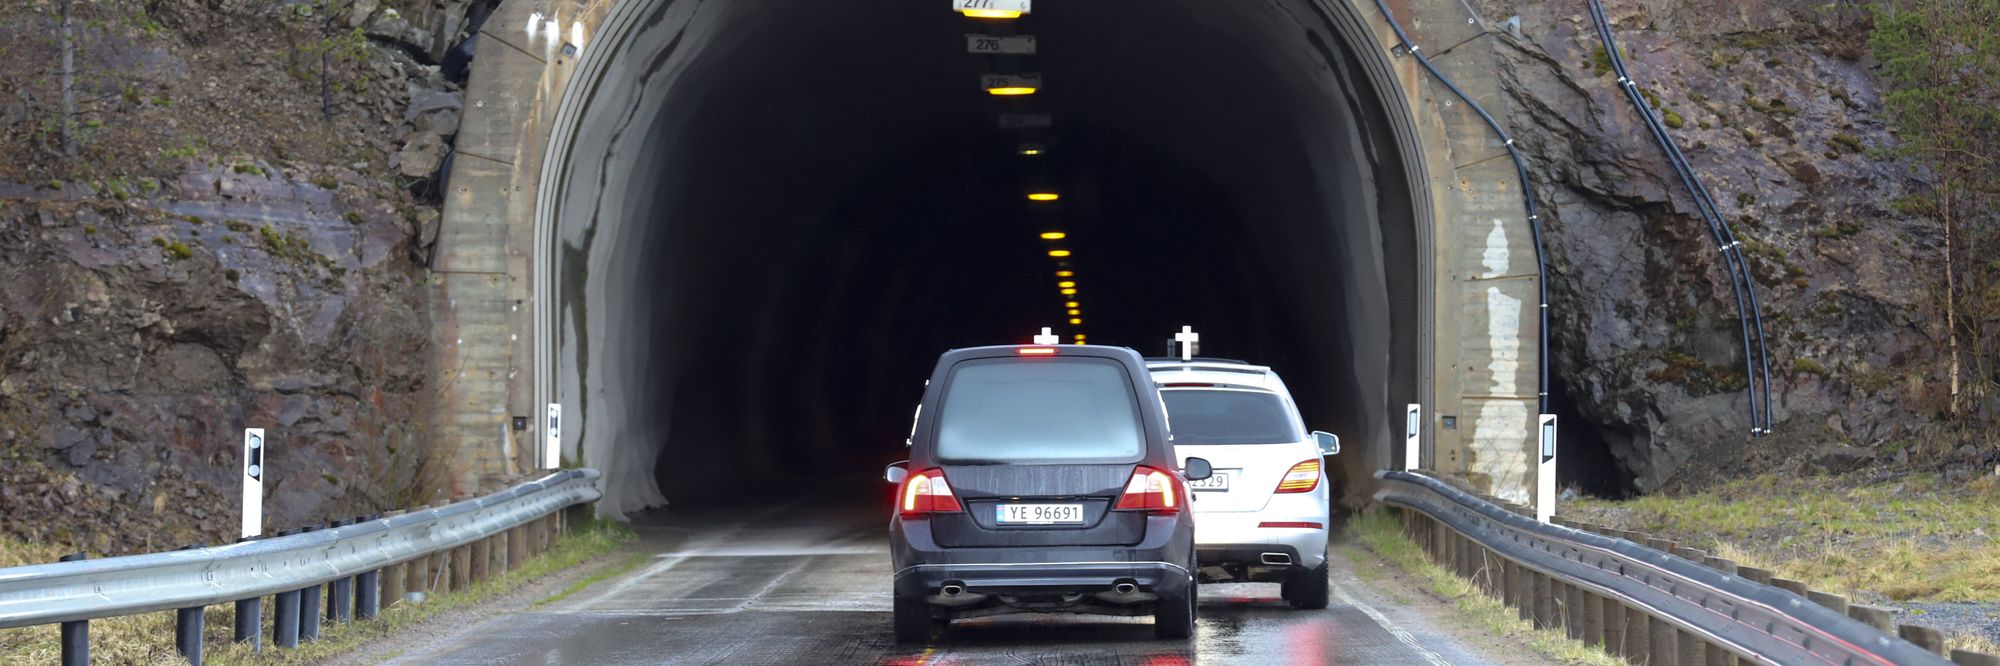 Tunnelen var ikke i forsvarlig stand da fire personer omkom i trafikkulykke i 2022